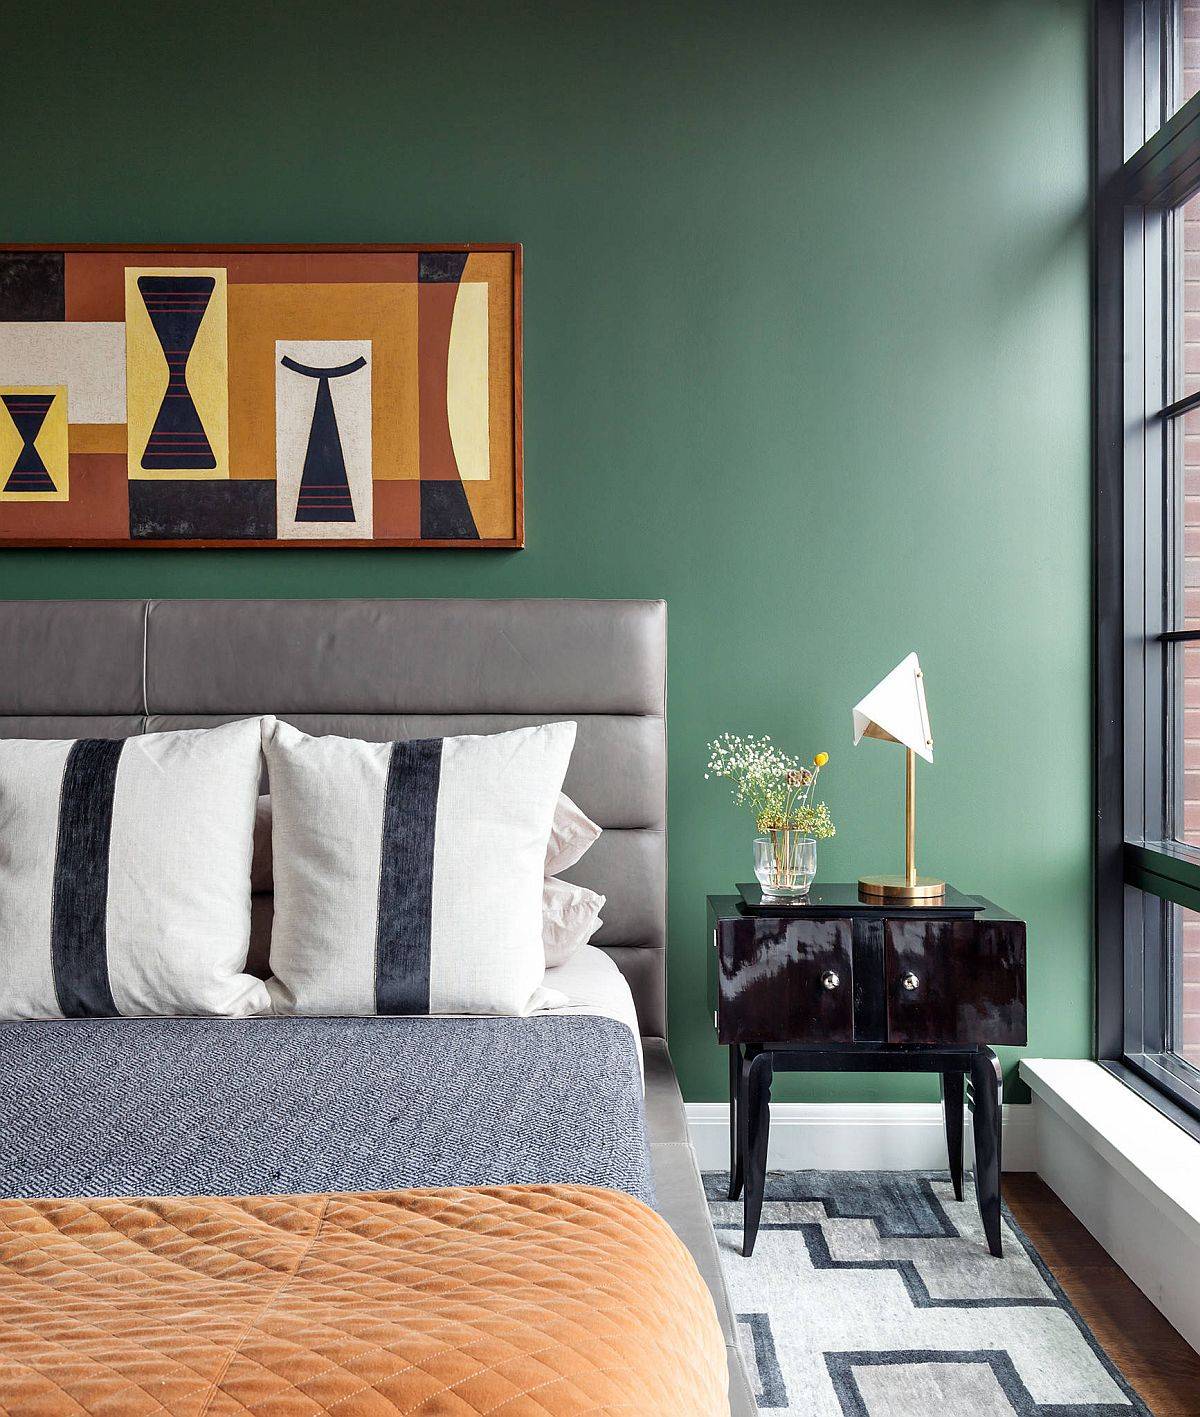 Bạn có thể kết hợp bộ đôi màu sắc trắng - xanh lá trong phòng ngủ của mình theo cách này. Căn phòng trông thật thanh lịch, hiện đại.